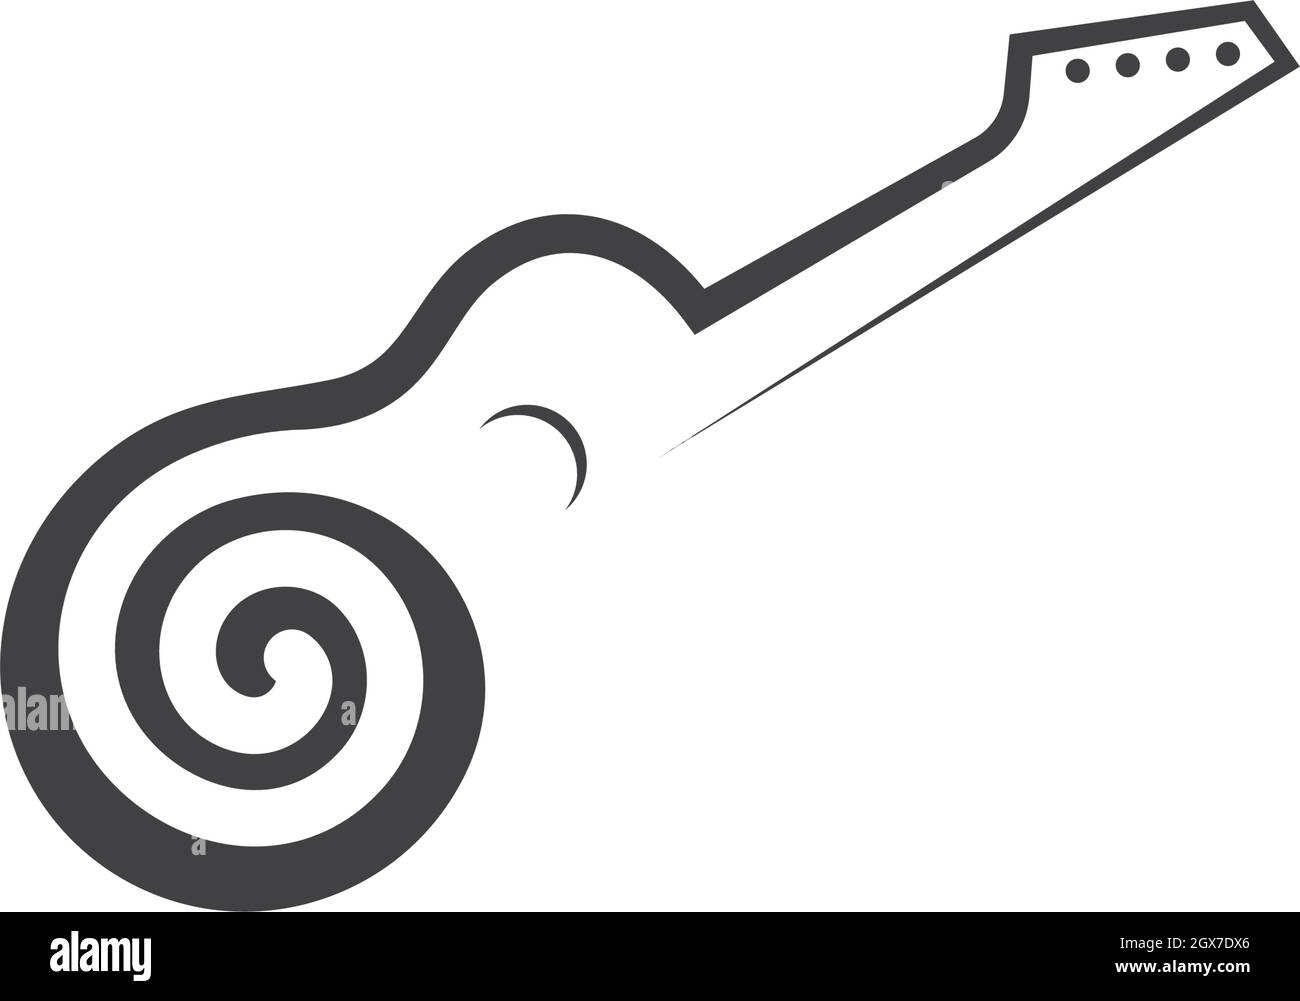 guitar icon logo vector illustration design Stock Vector